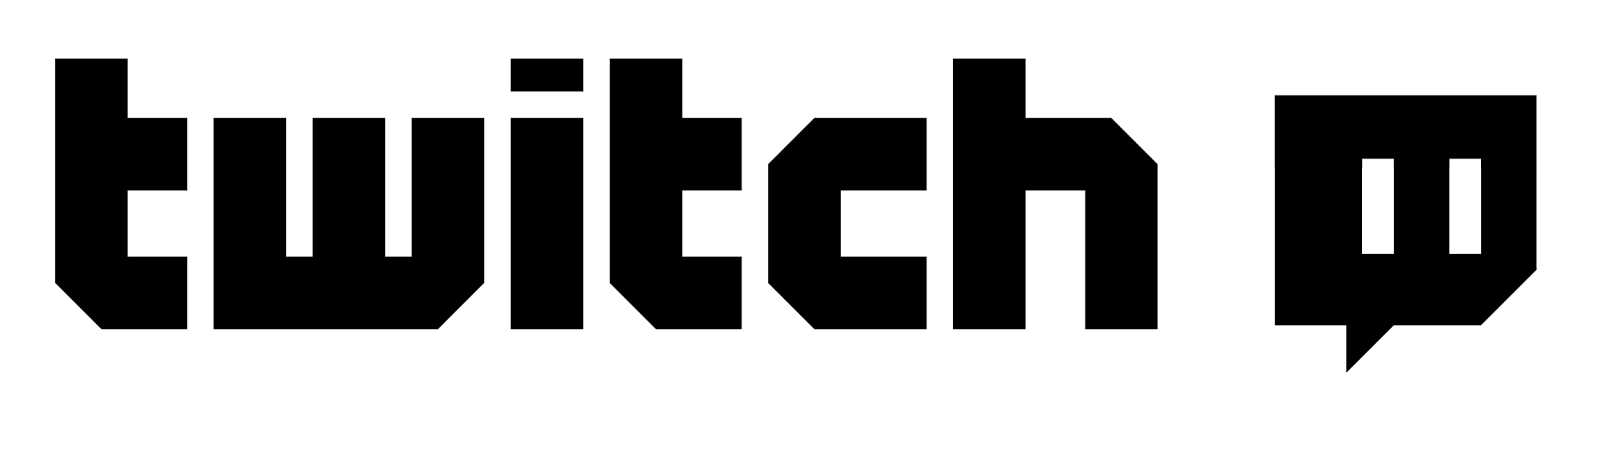 Godmode Podcast: Fevereiro 2014 - Black and White Twitch Logo Transparent